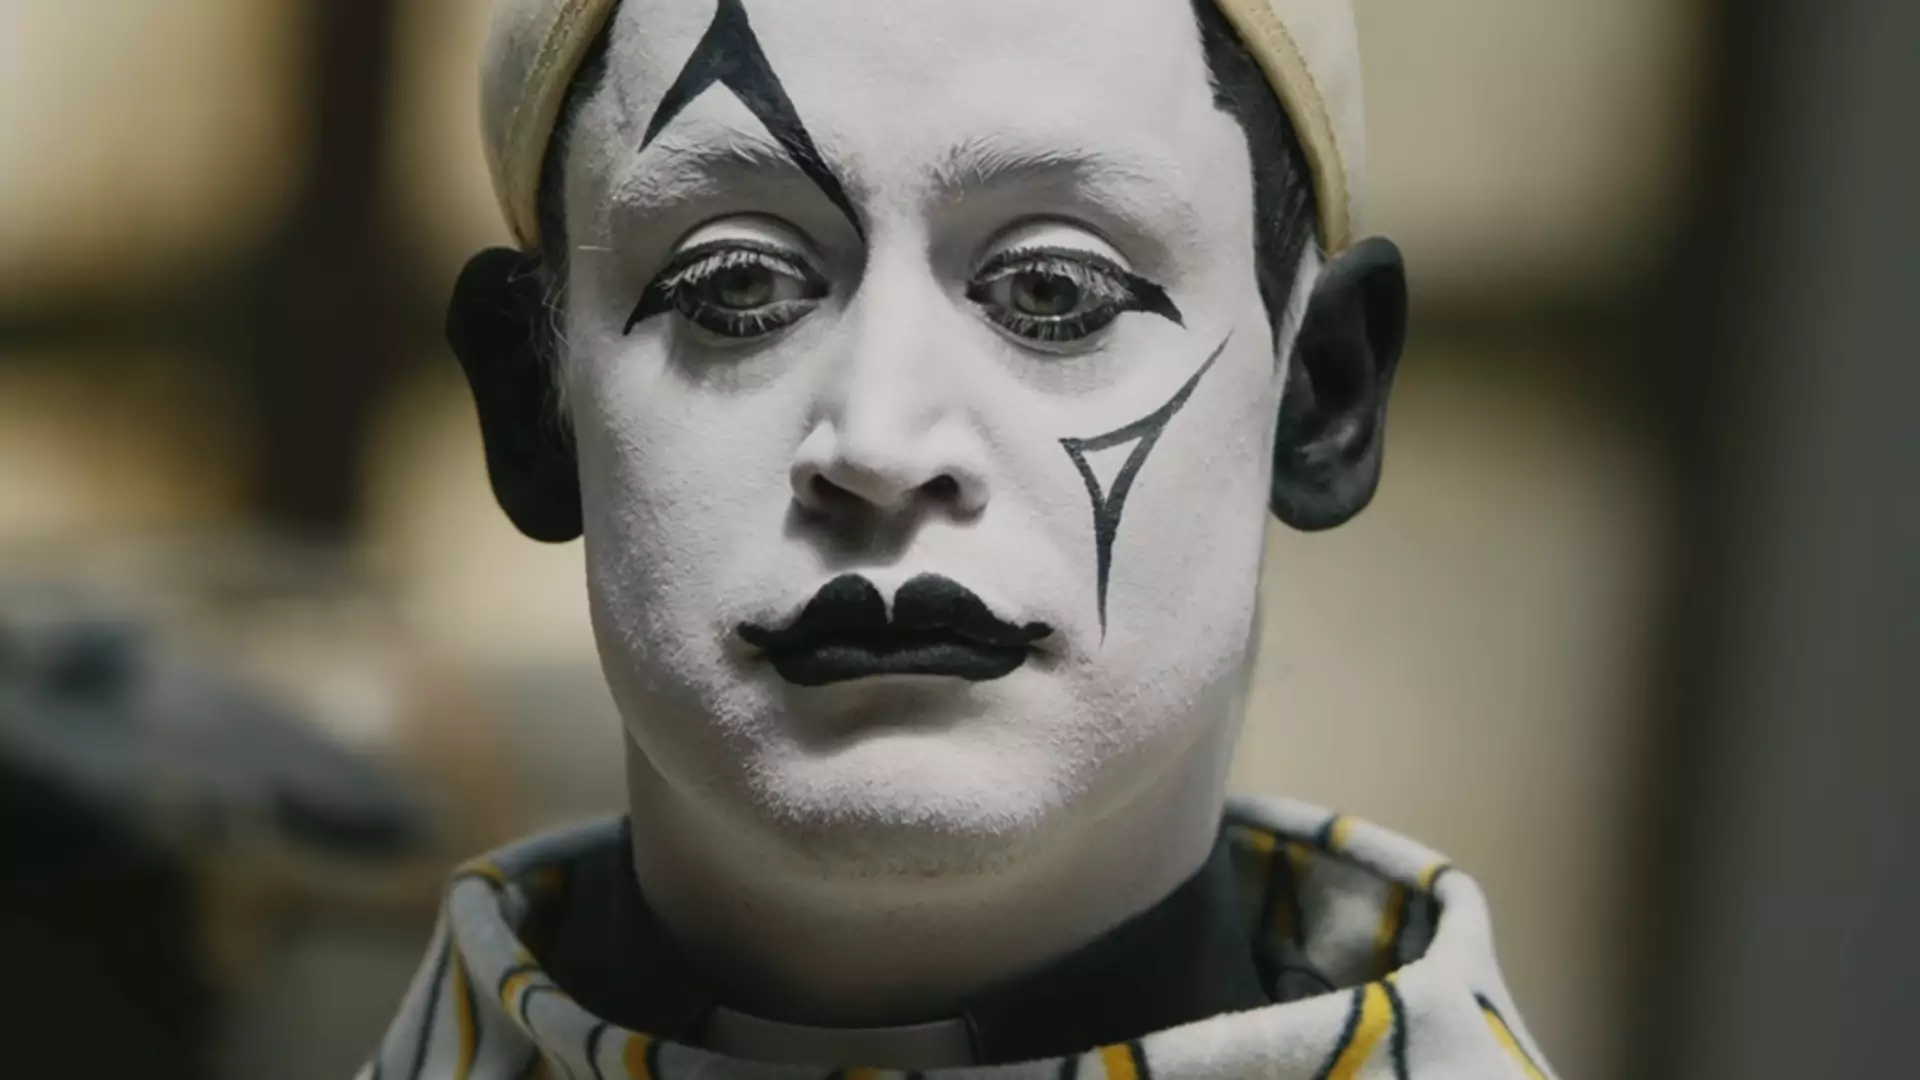 Macaulay Culkin wraca z nowym filmem! "Kevin sam w domu" w roli klauna przyprawia o dreszcze